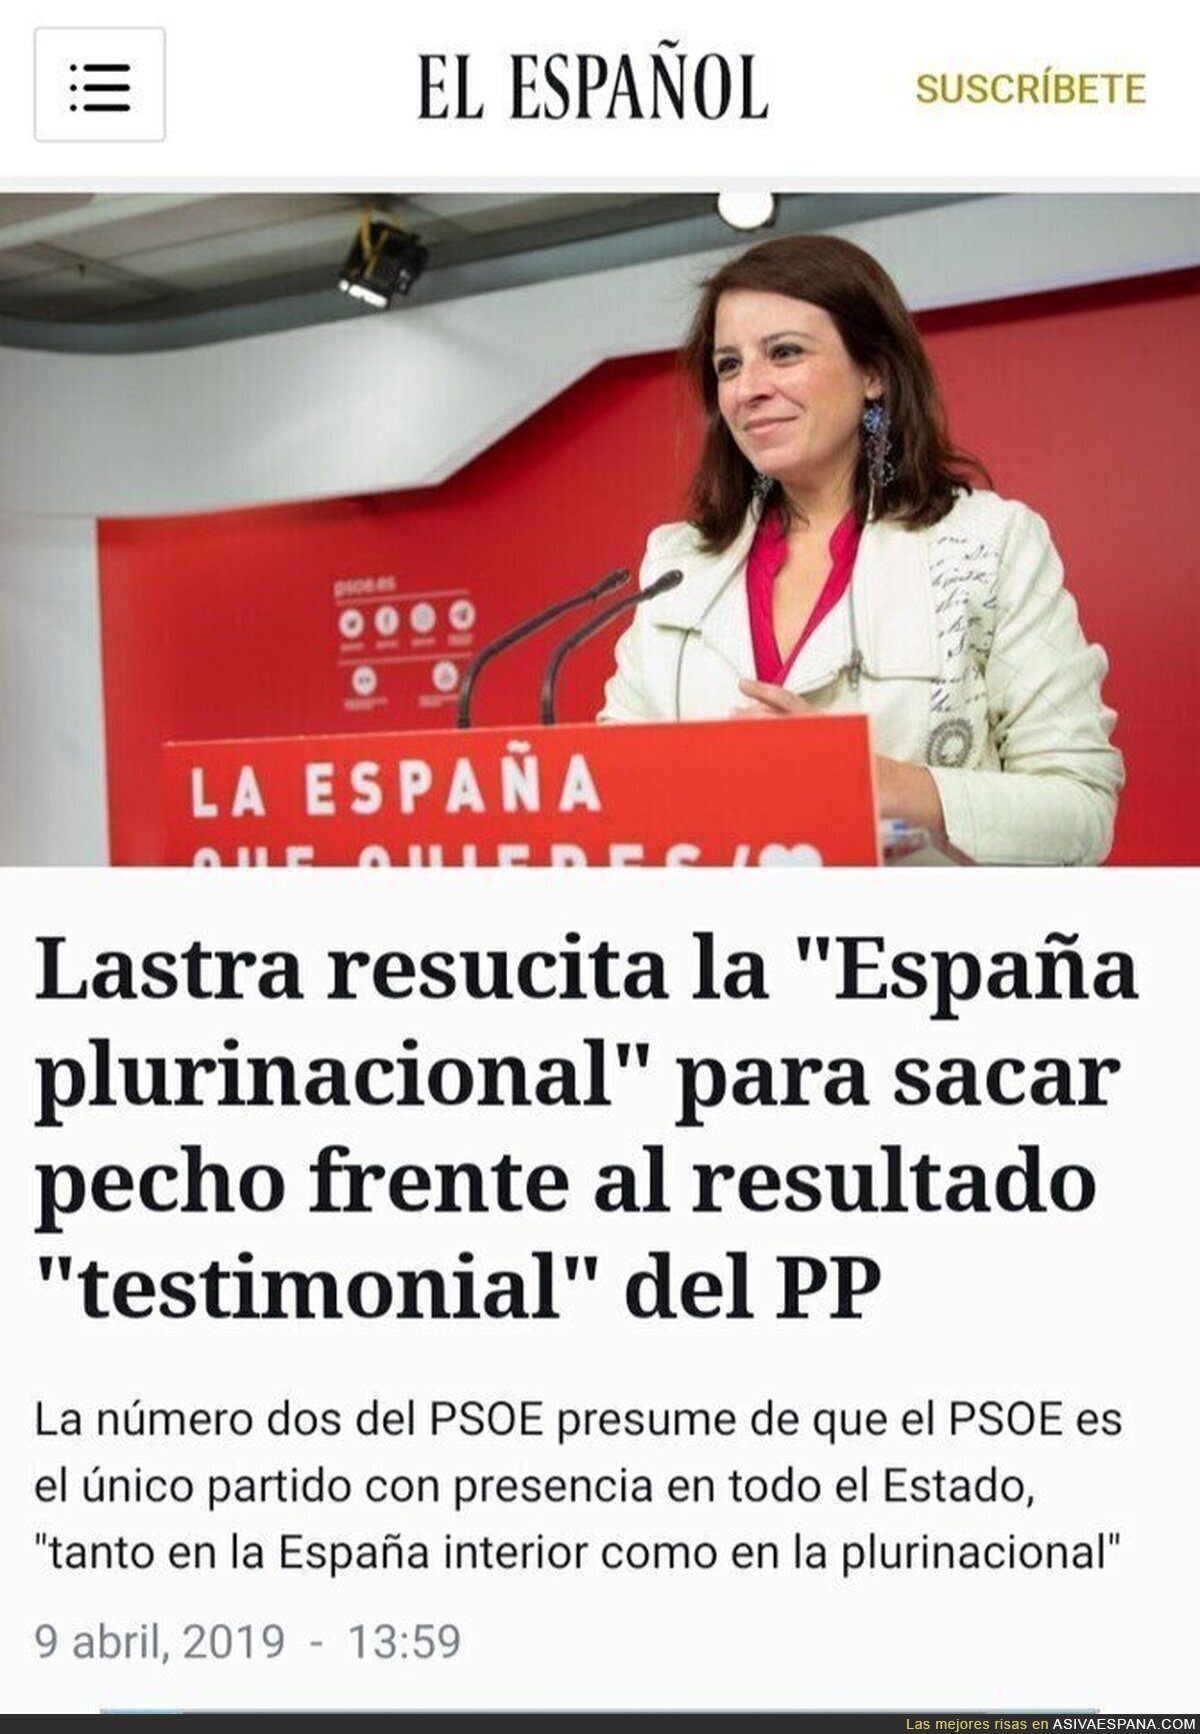 Adriana Lastre distingue entre la "España interior" y la "España plurinacional", en vez de la periférica